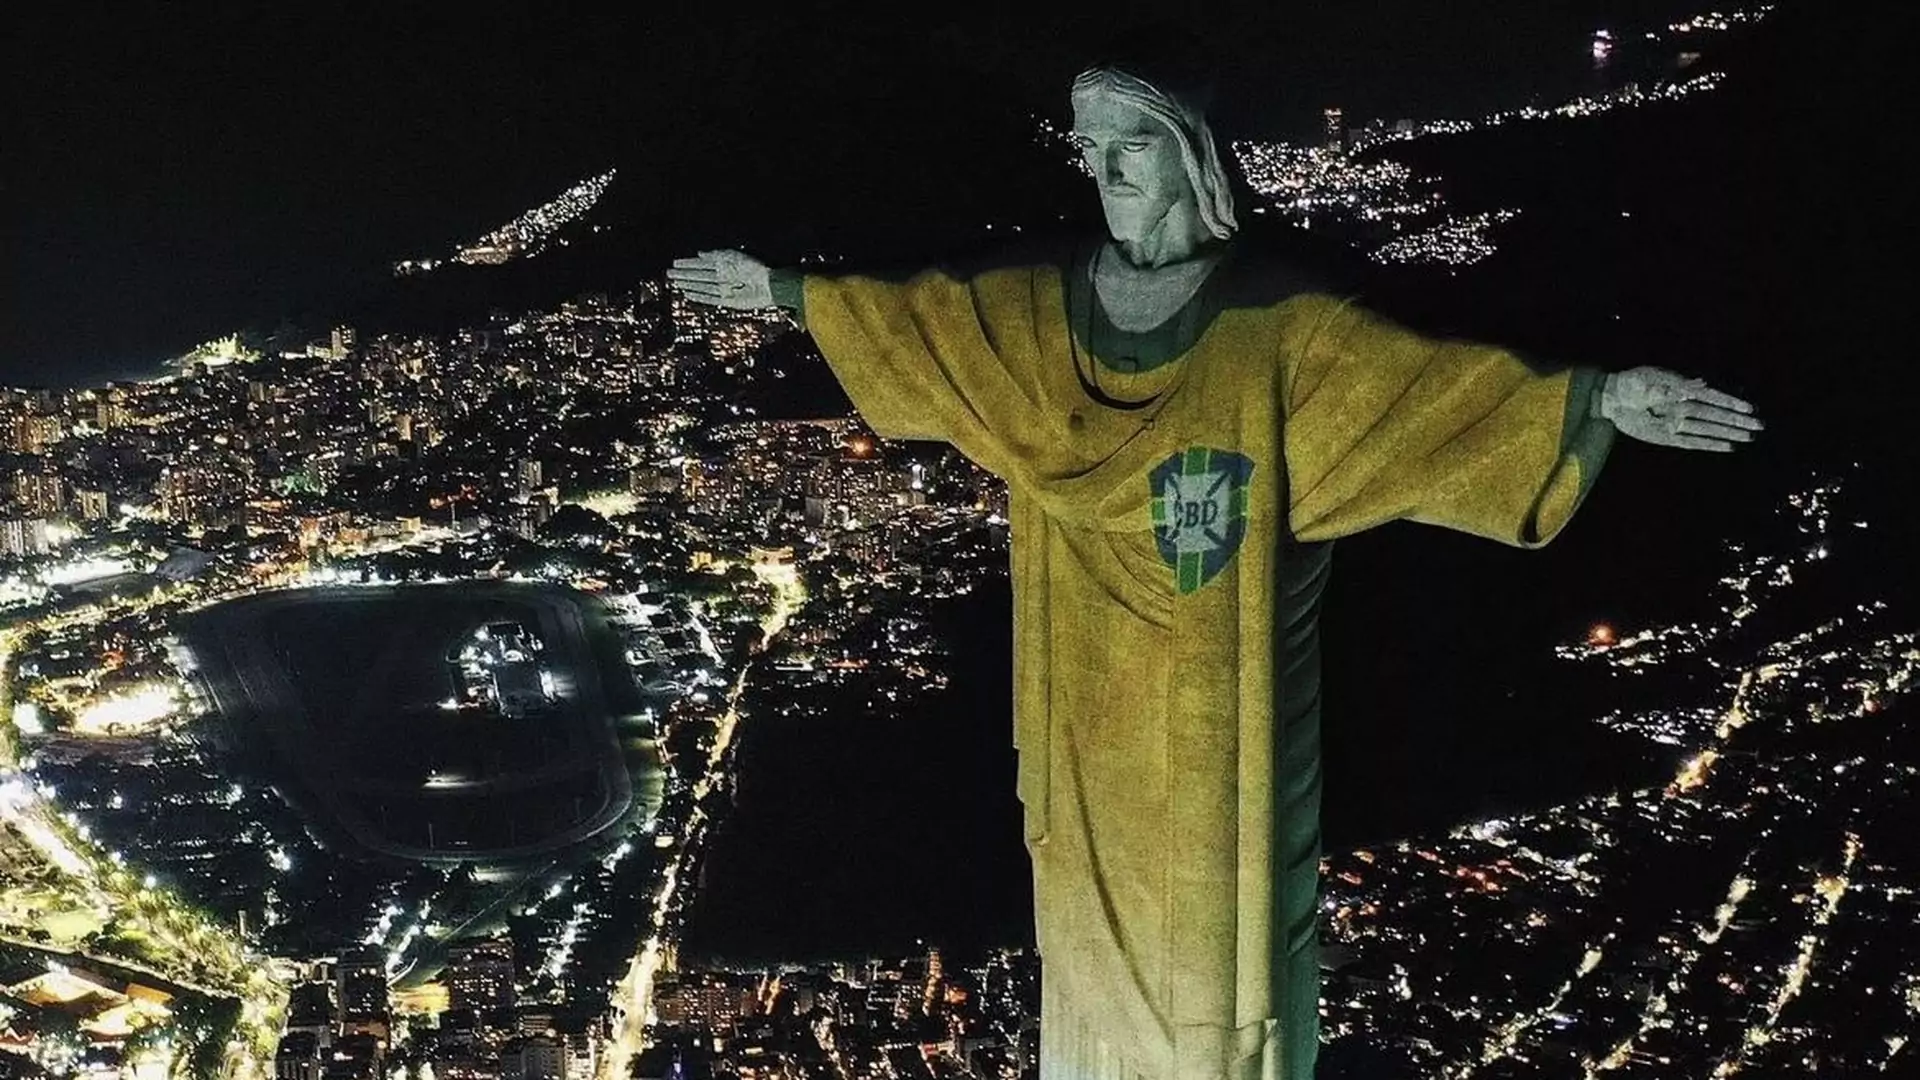 Chrystus w Rio de Janeiro w koszulce piłkarskiej. Nietypowy widok